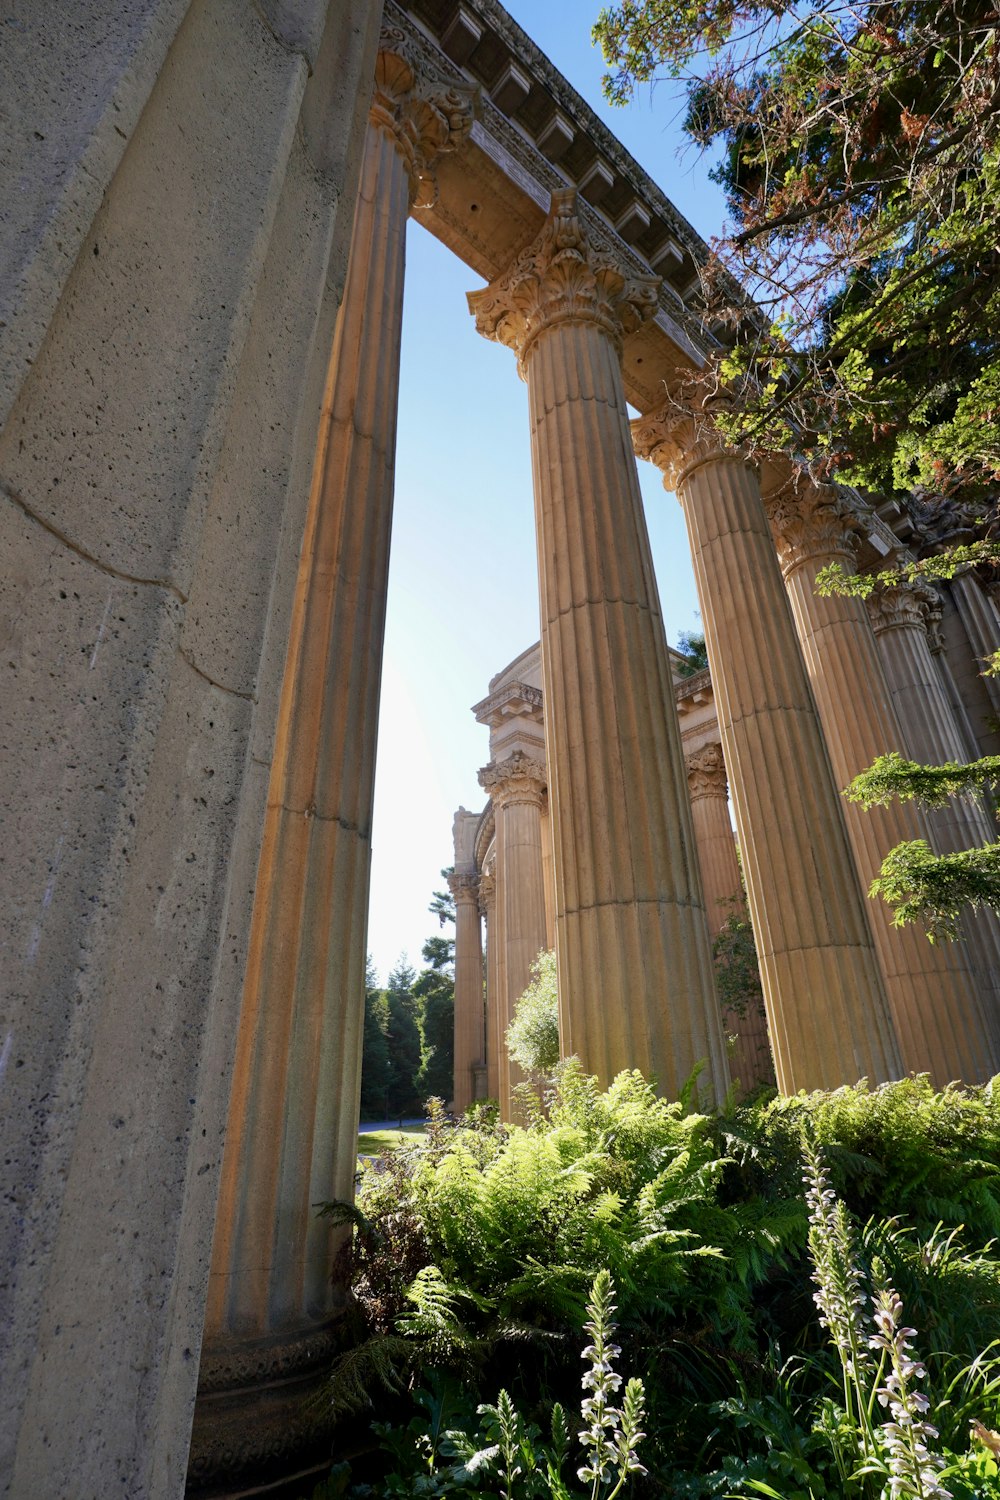 a group of tall pillars